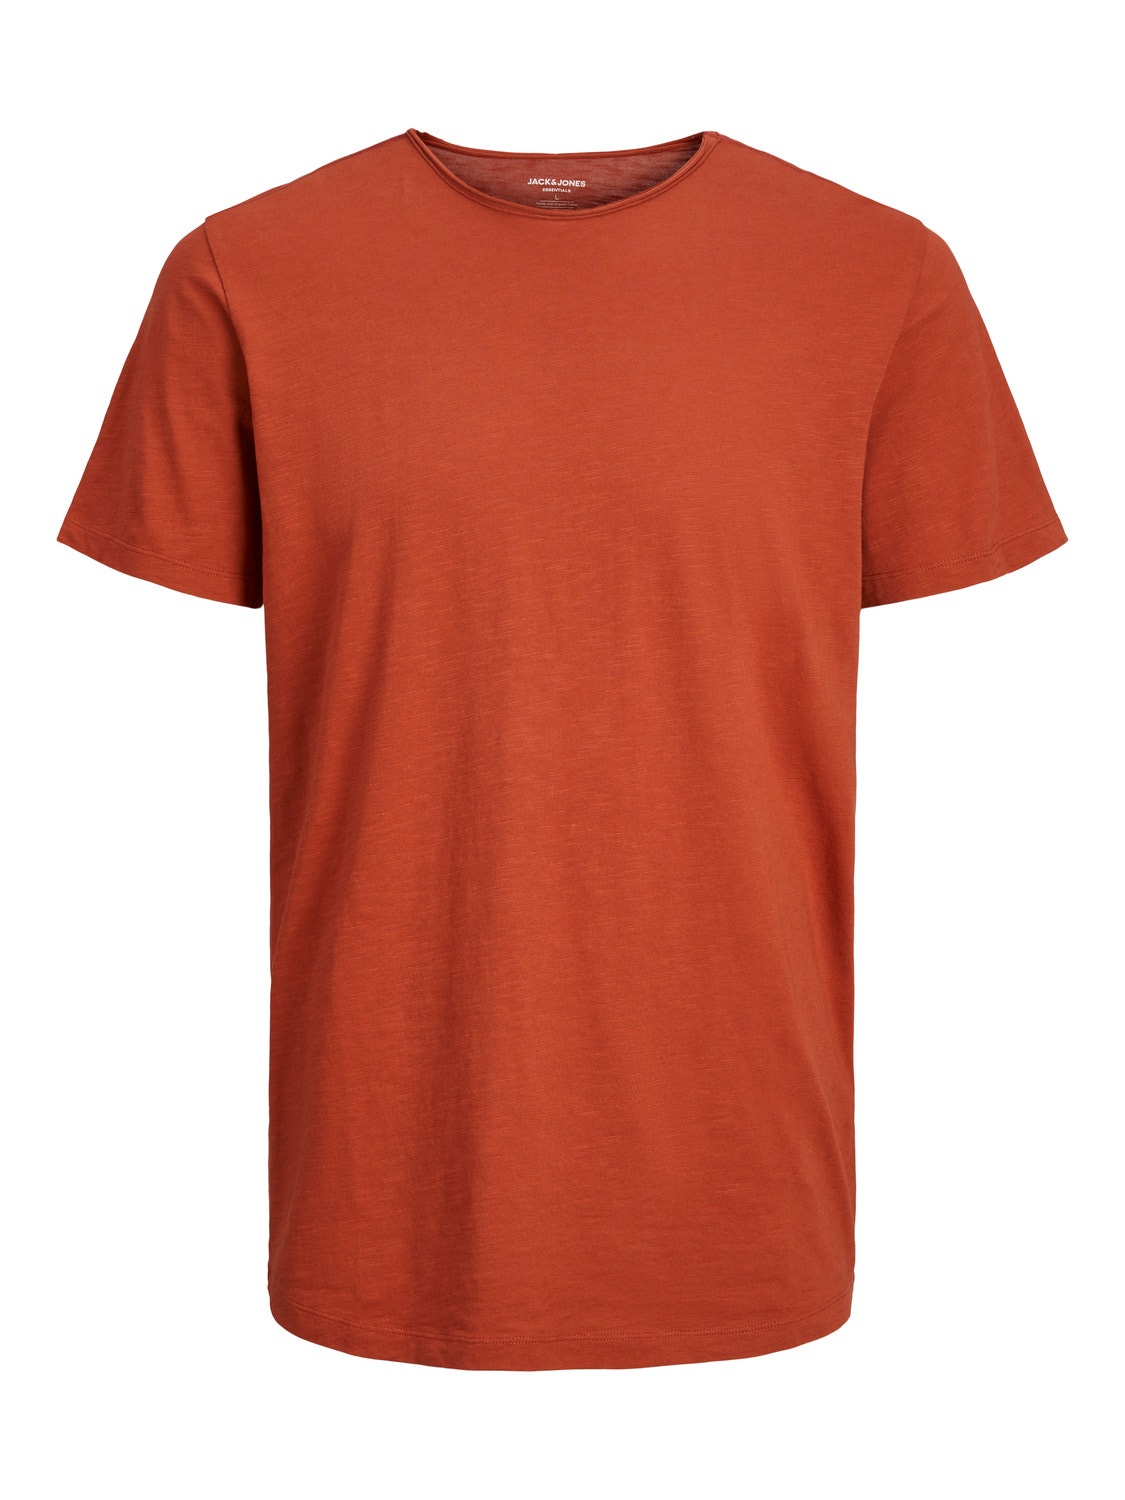 Jack & Jones Plain Crew neck T-shirt -Cinnabar - 12182498